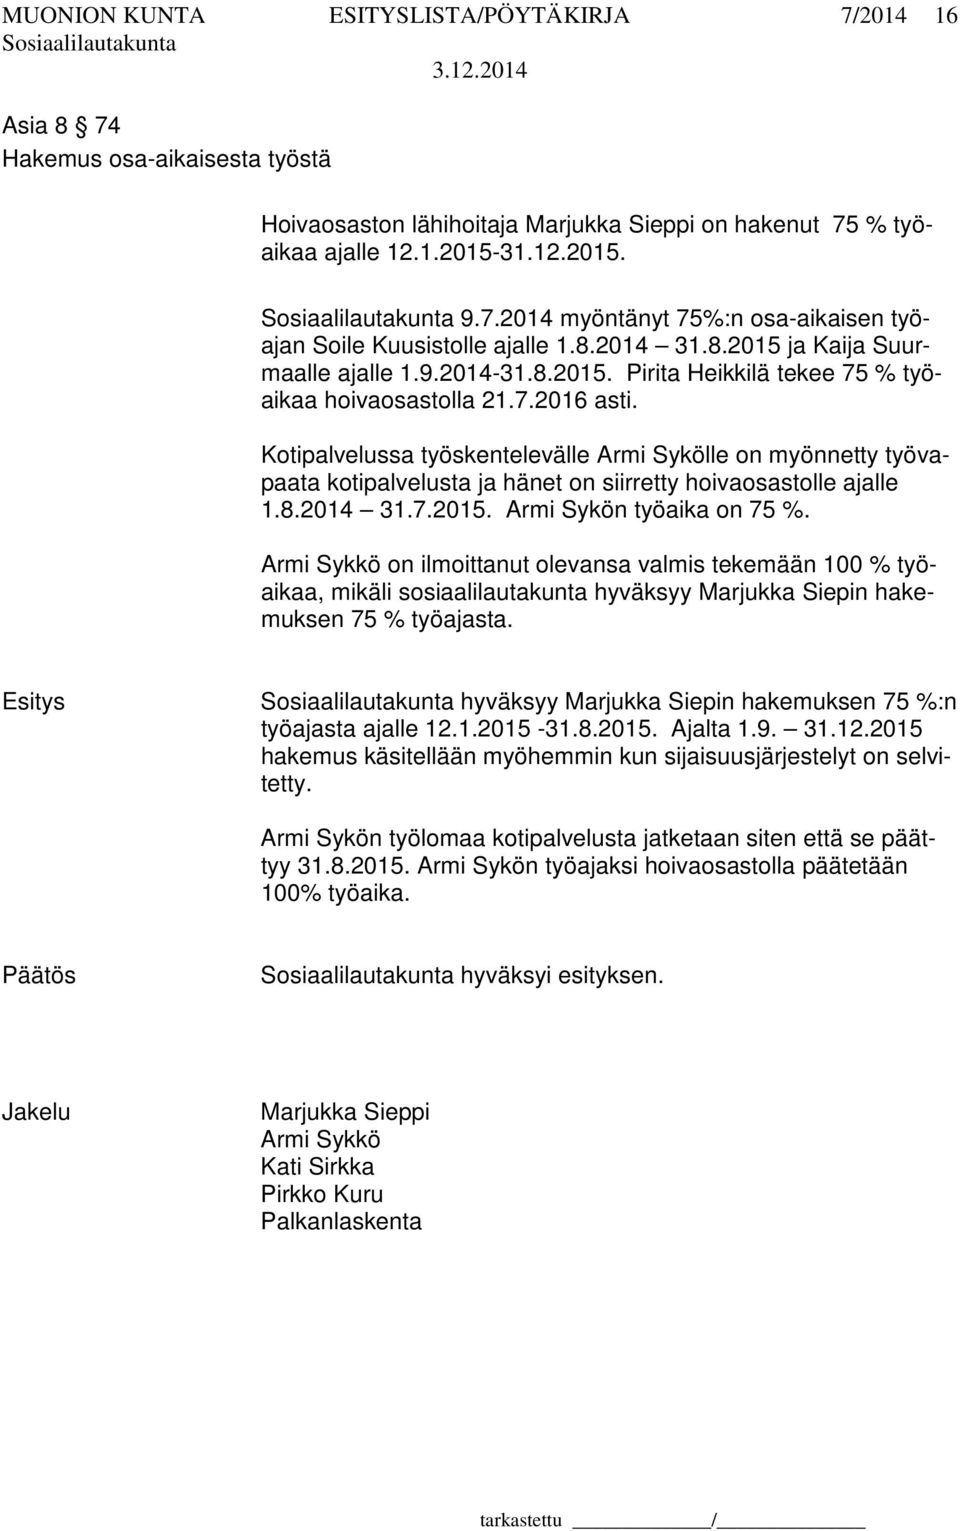 Kotipalvelussa työskentelevälle Armi Sykölle on myönnetty työvapaata kotipalvelusta ja hänet on siirretty hoivaosastolle ajalle 1.8.2014 31.7.2015. Armi Sykön työaika on 75 %.